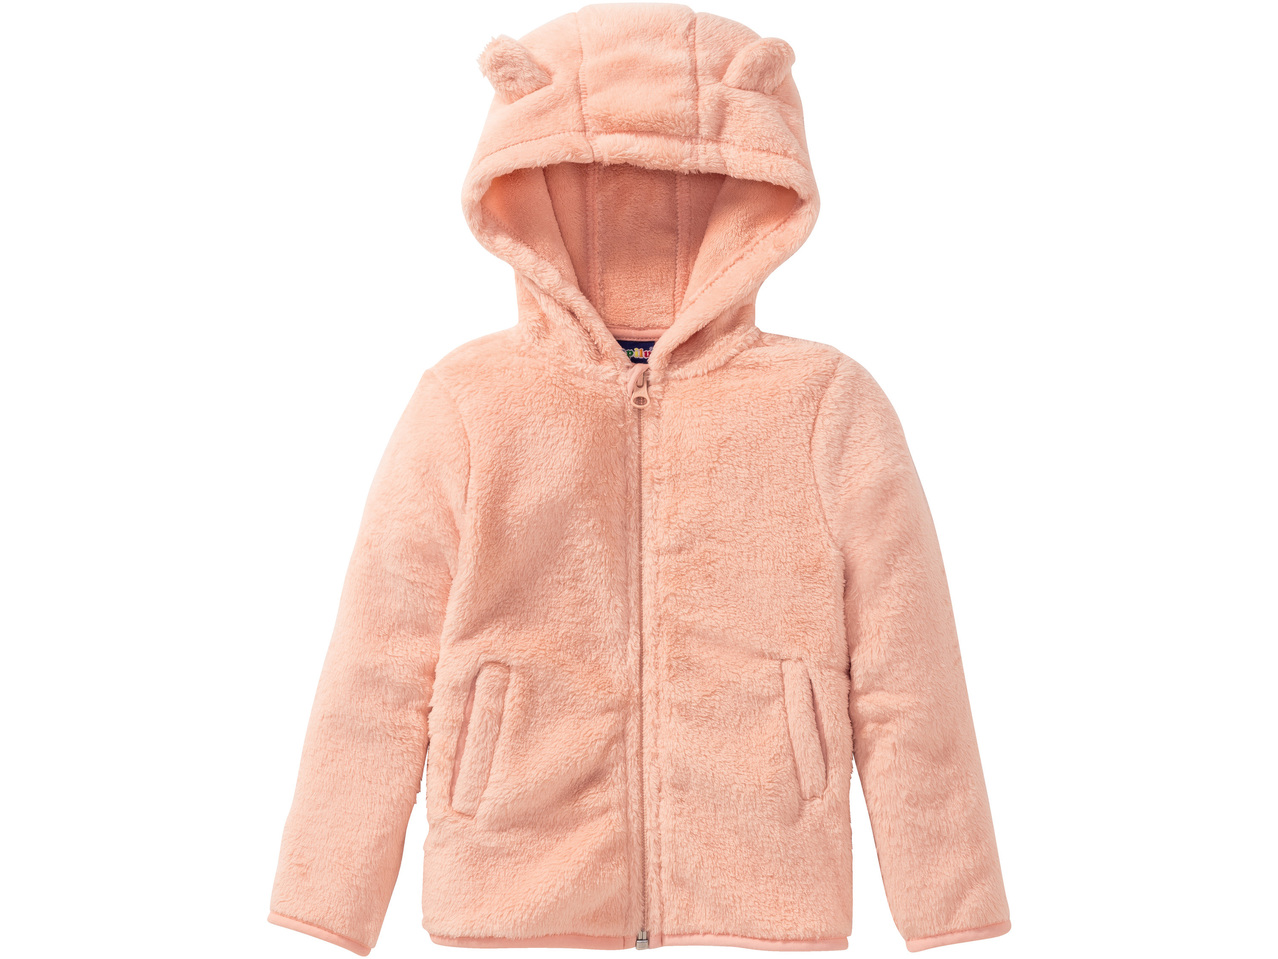 LUPILU Kids' Fleece Jacket